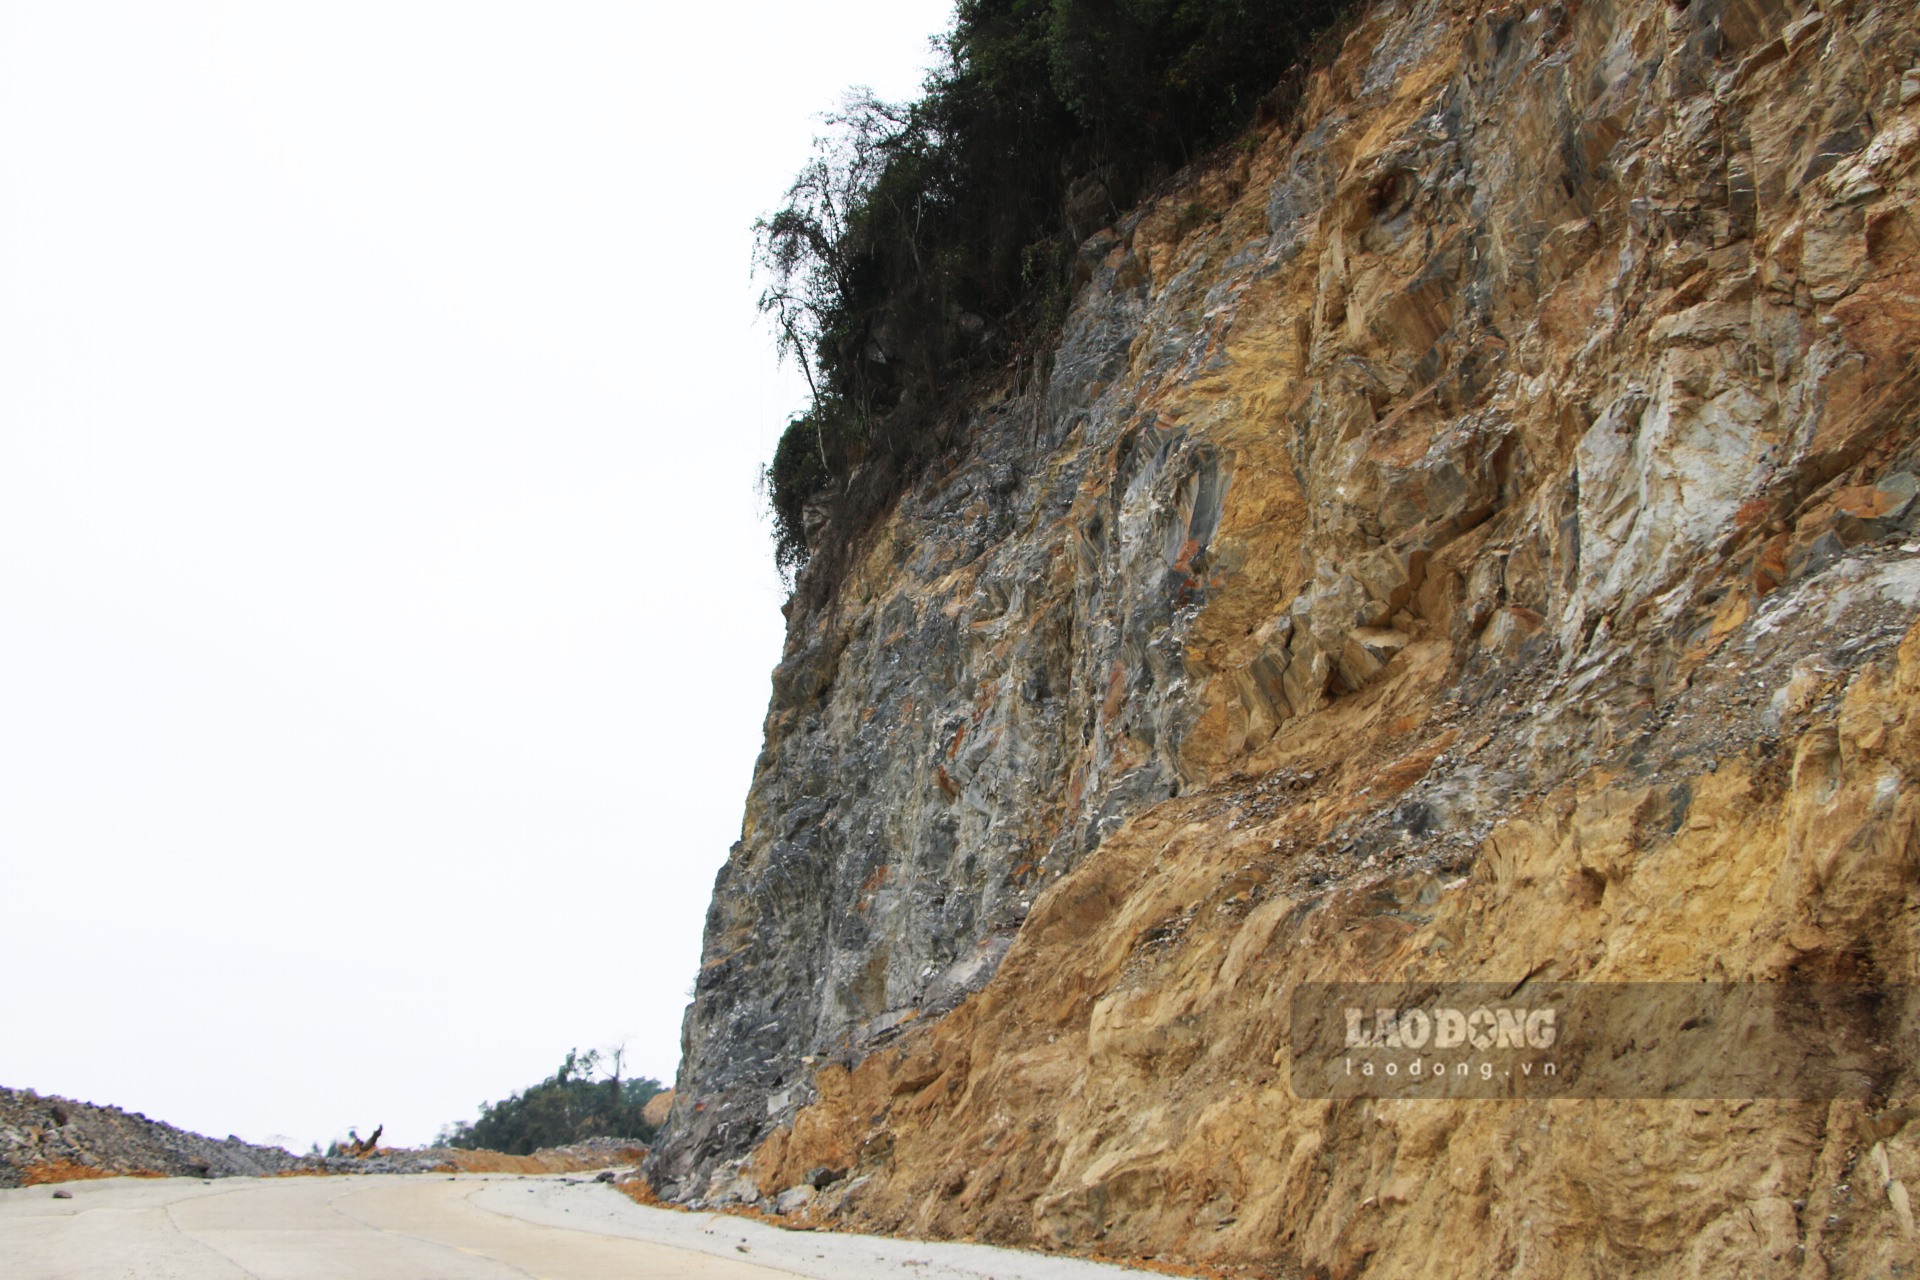 Những vách đá taluy dương dựng đứng cao hàng chục mét thường xuyên xảy ra hiện tượng đá lở. Ngoài ra trong quá trình phá núi mở đường, đơn vị thi công để lại những vách núi đá lởm chởm.